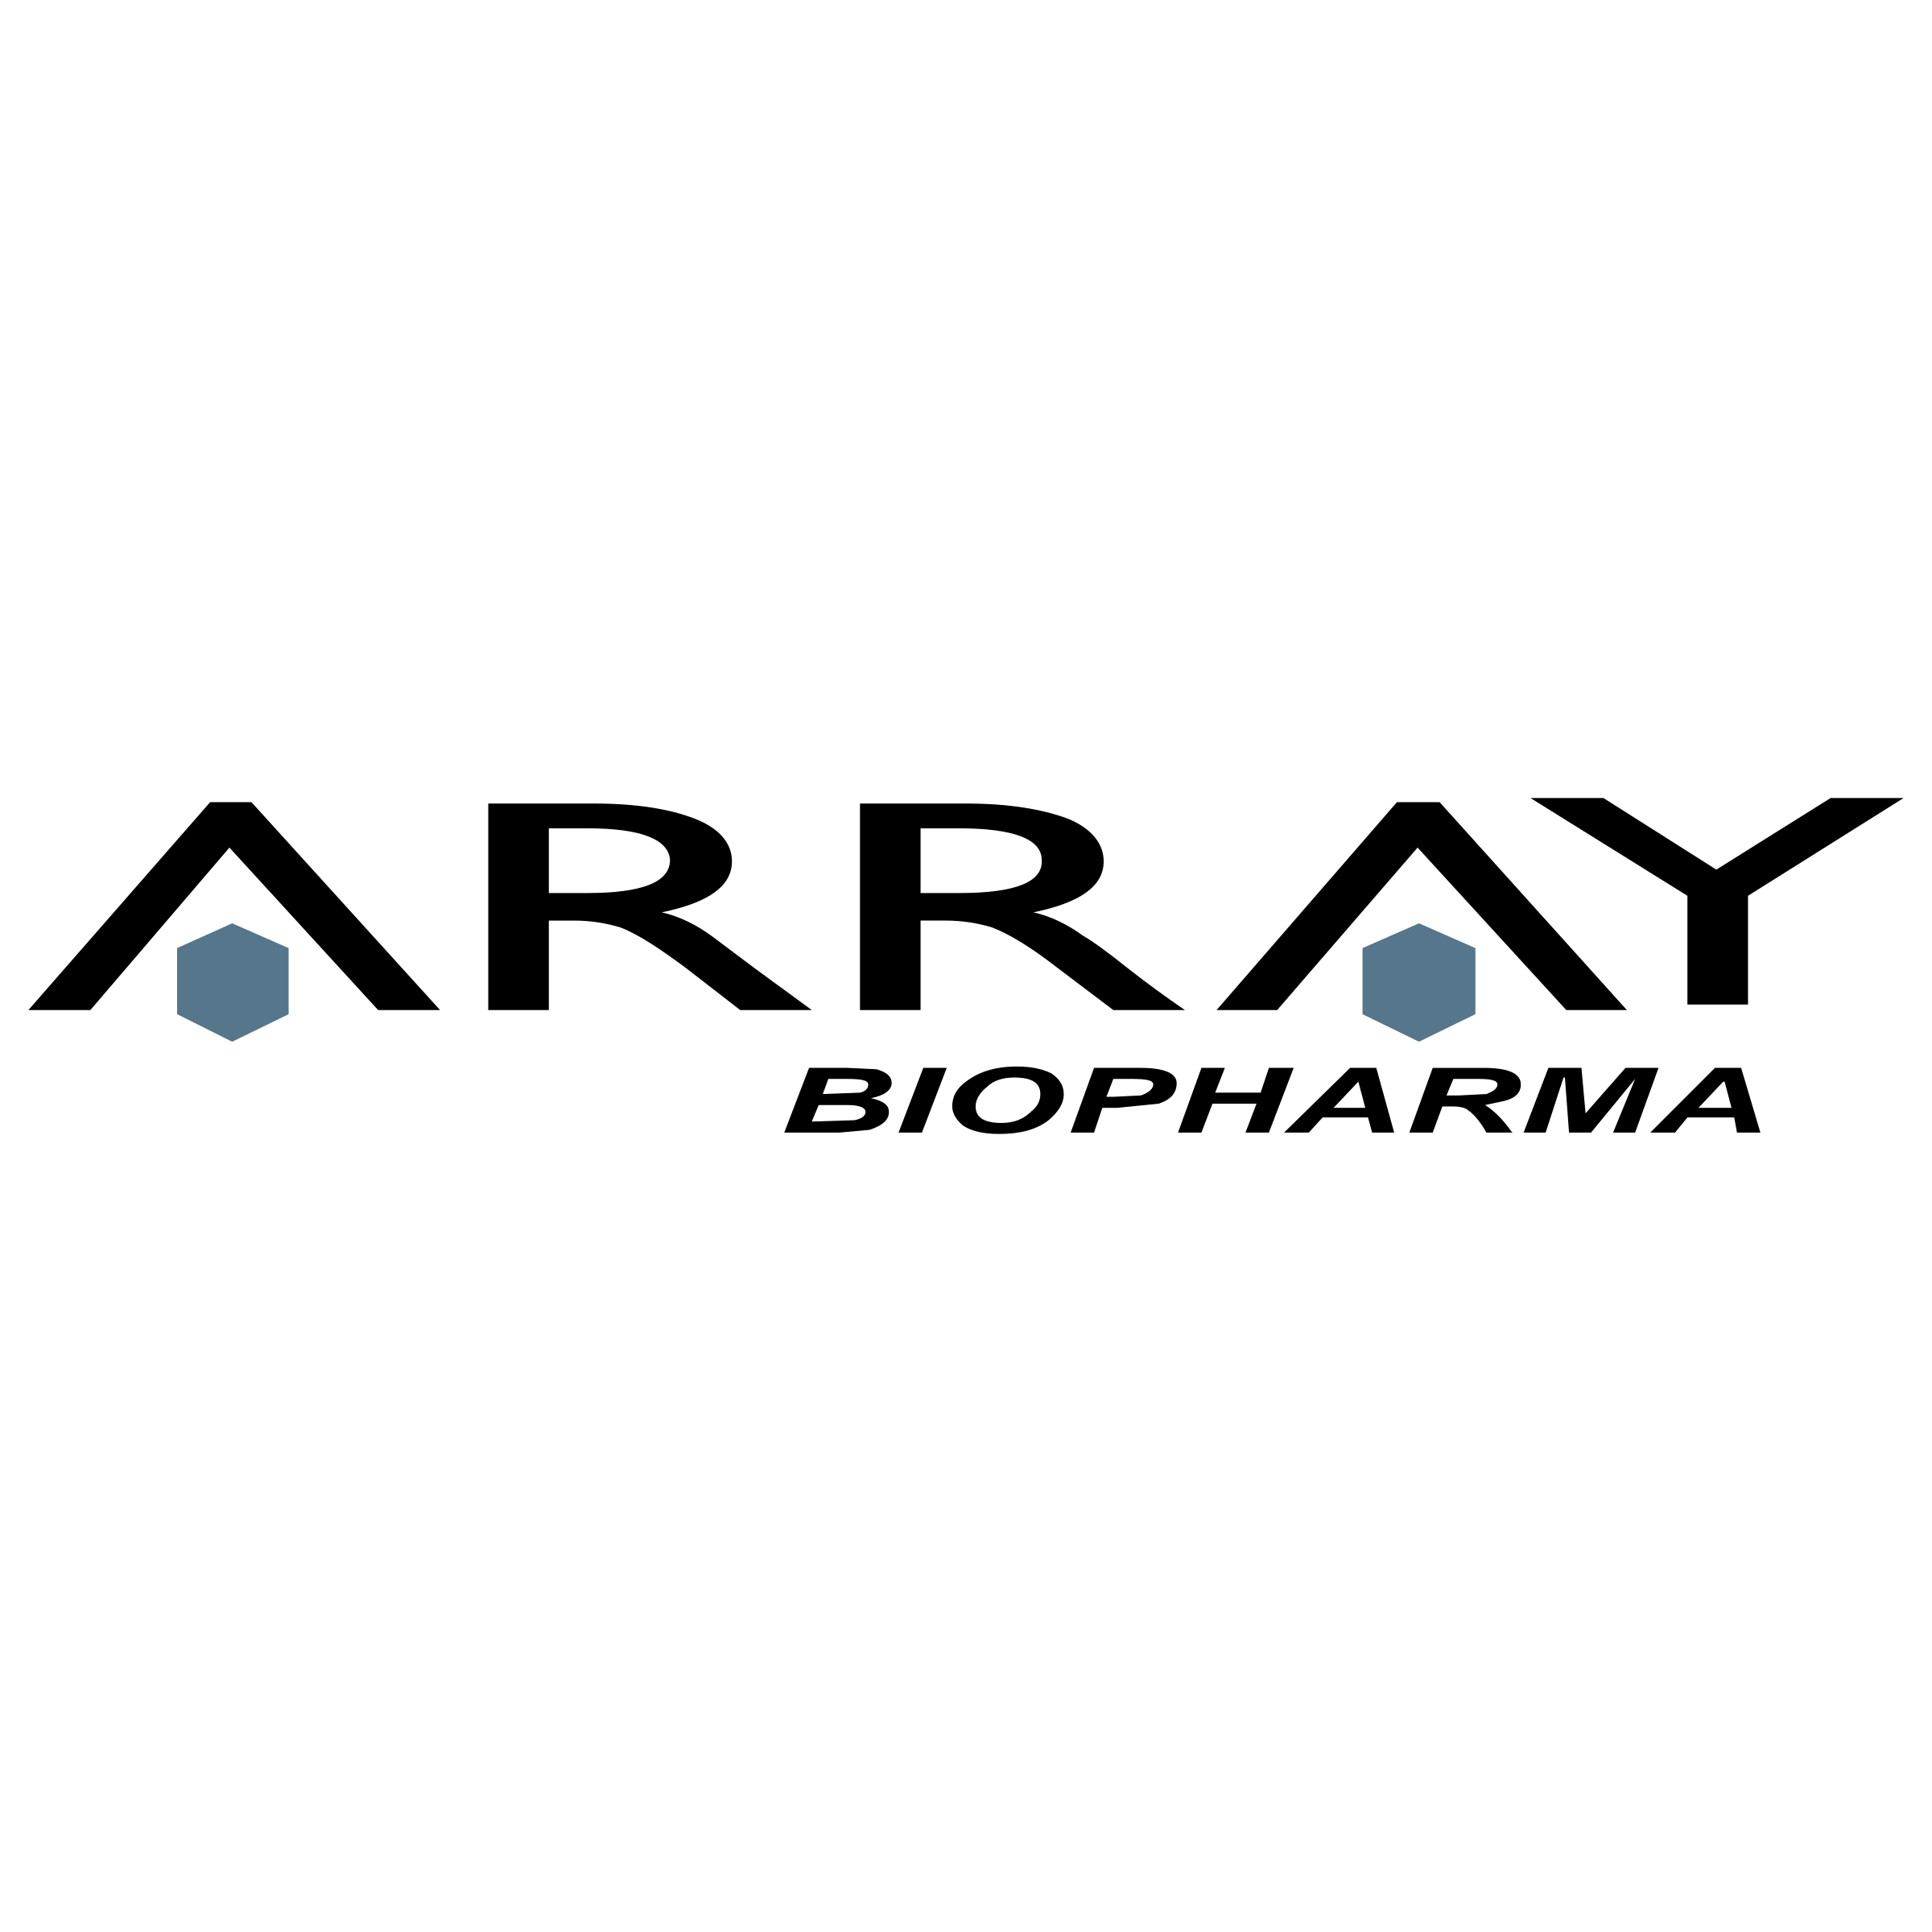 Biopharma Logo - Array Biopharma Logo PNG Transparent & SVG Vector - Freebie Supply